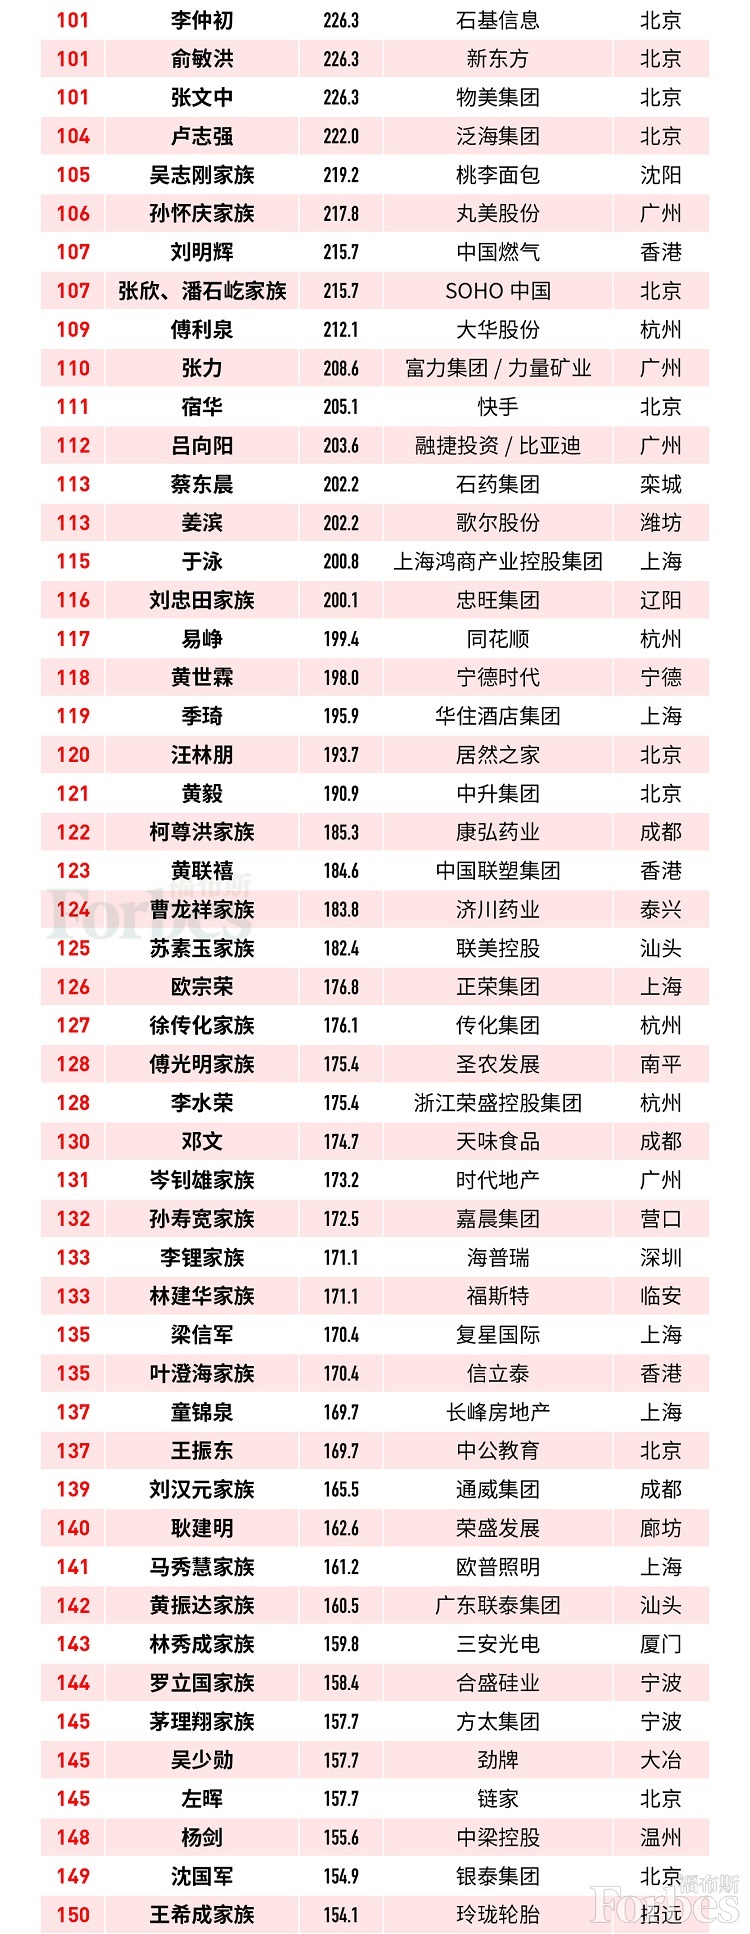 王健林财富缩水682亿元，从福布斯富豪榜第4跌至第14